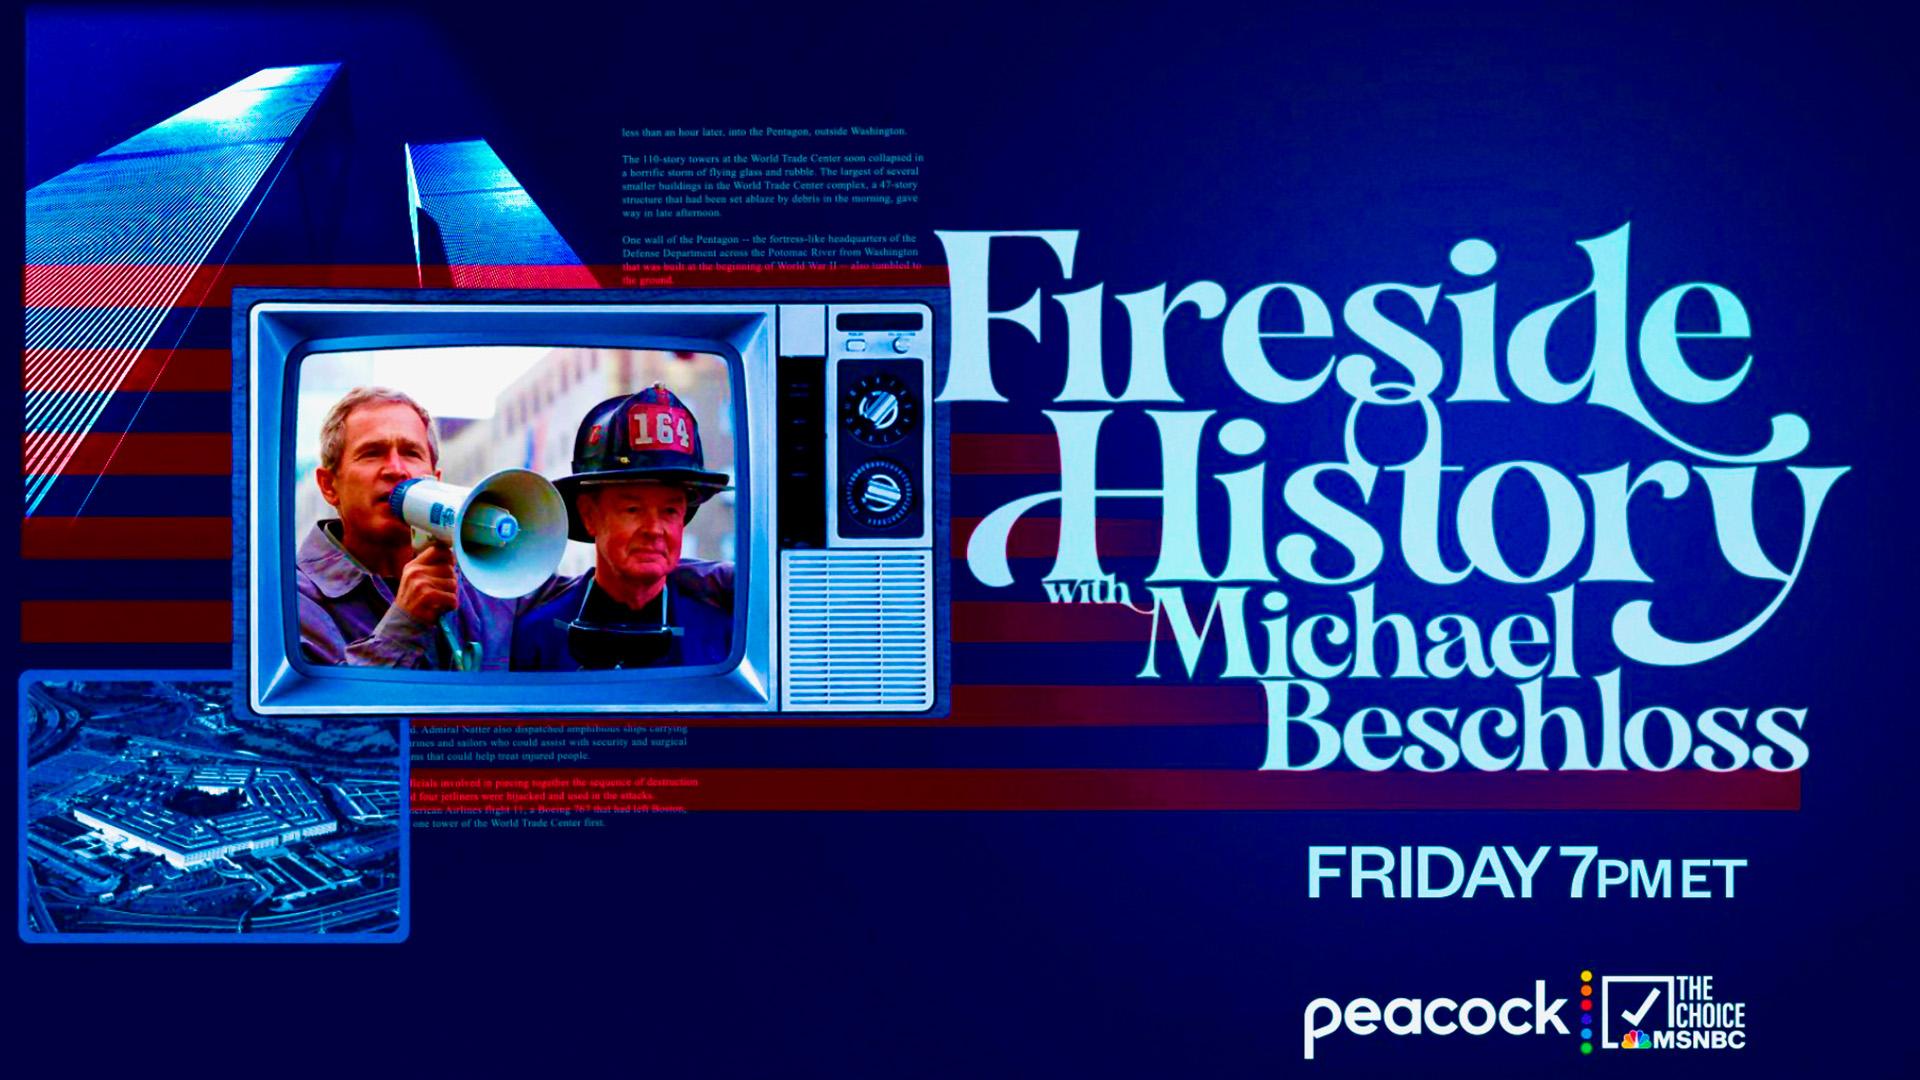 Fireside History with Michael Beschloss